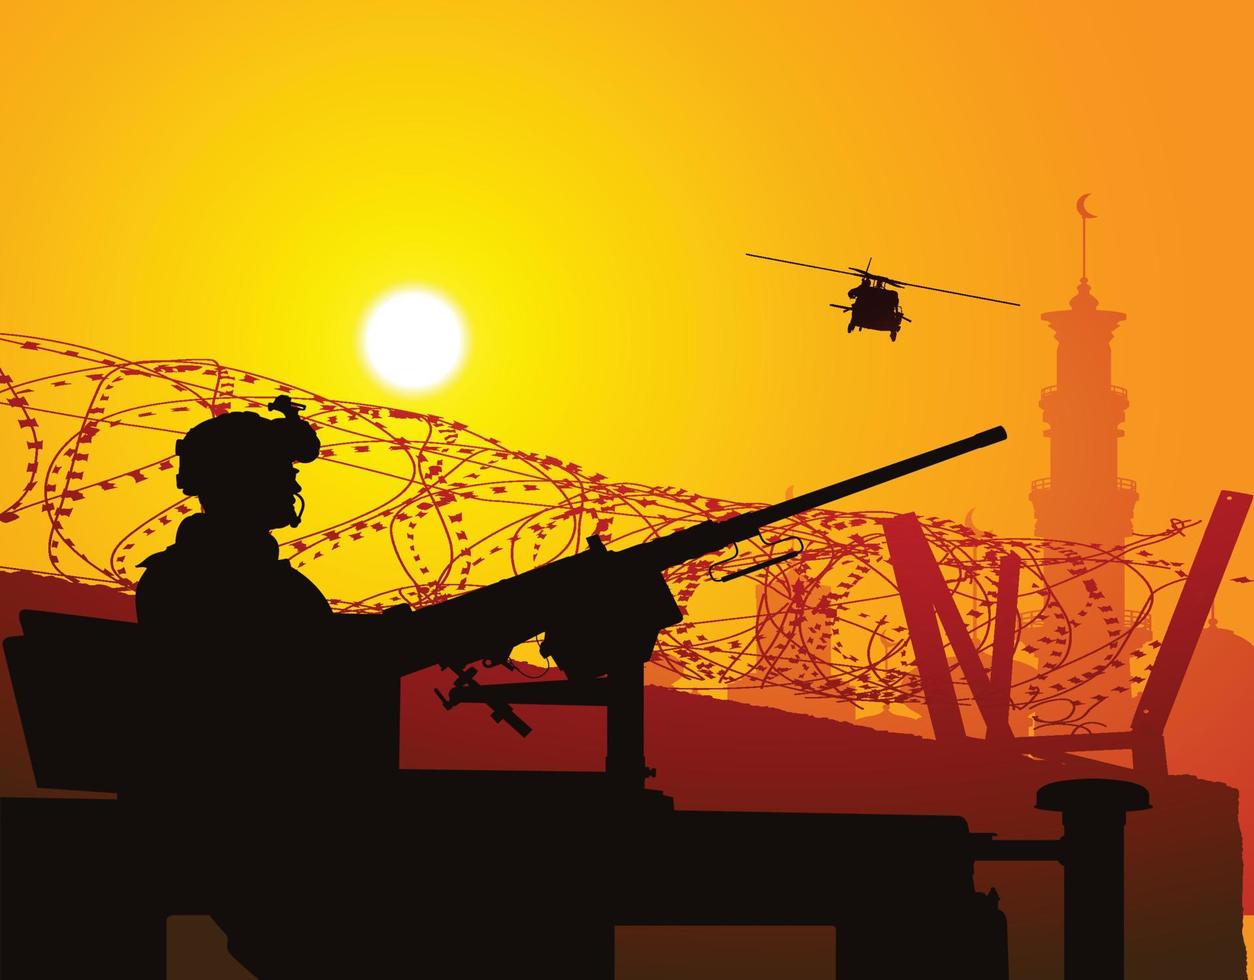 Soldaten bewachen die Stadtmauer bei Sonnenuntergang vektor